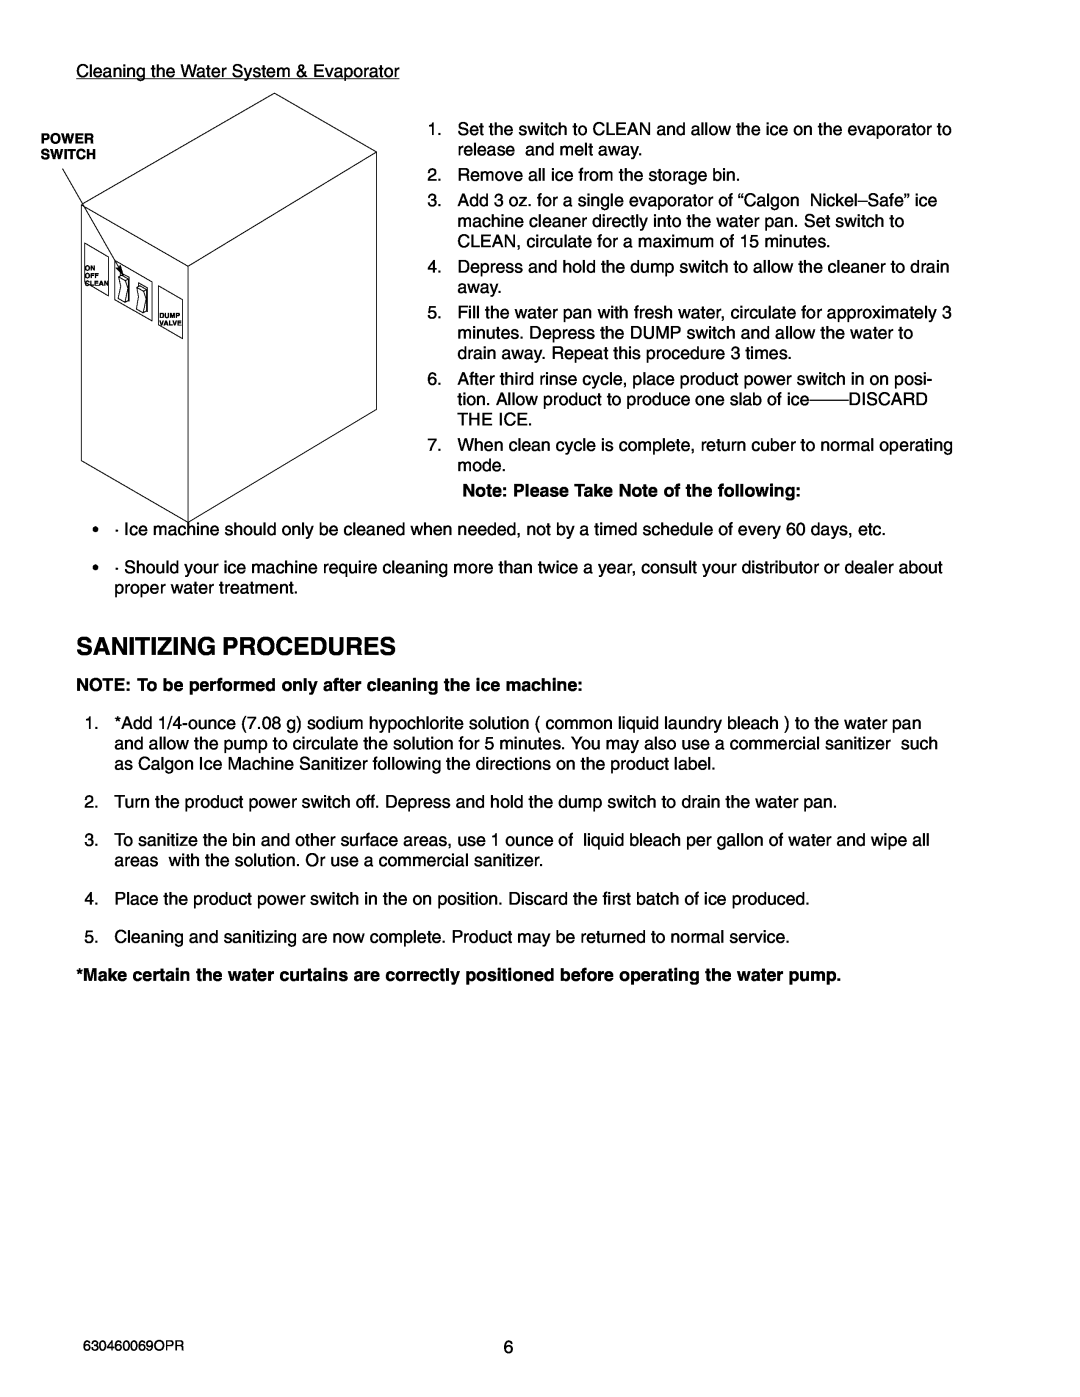 Maytag 224 manual Sanitizing Procedures 